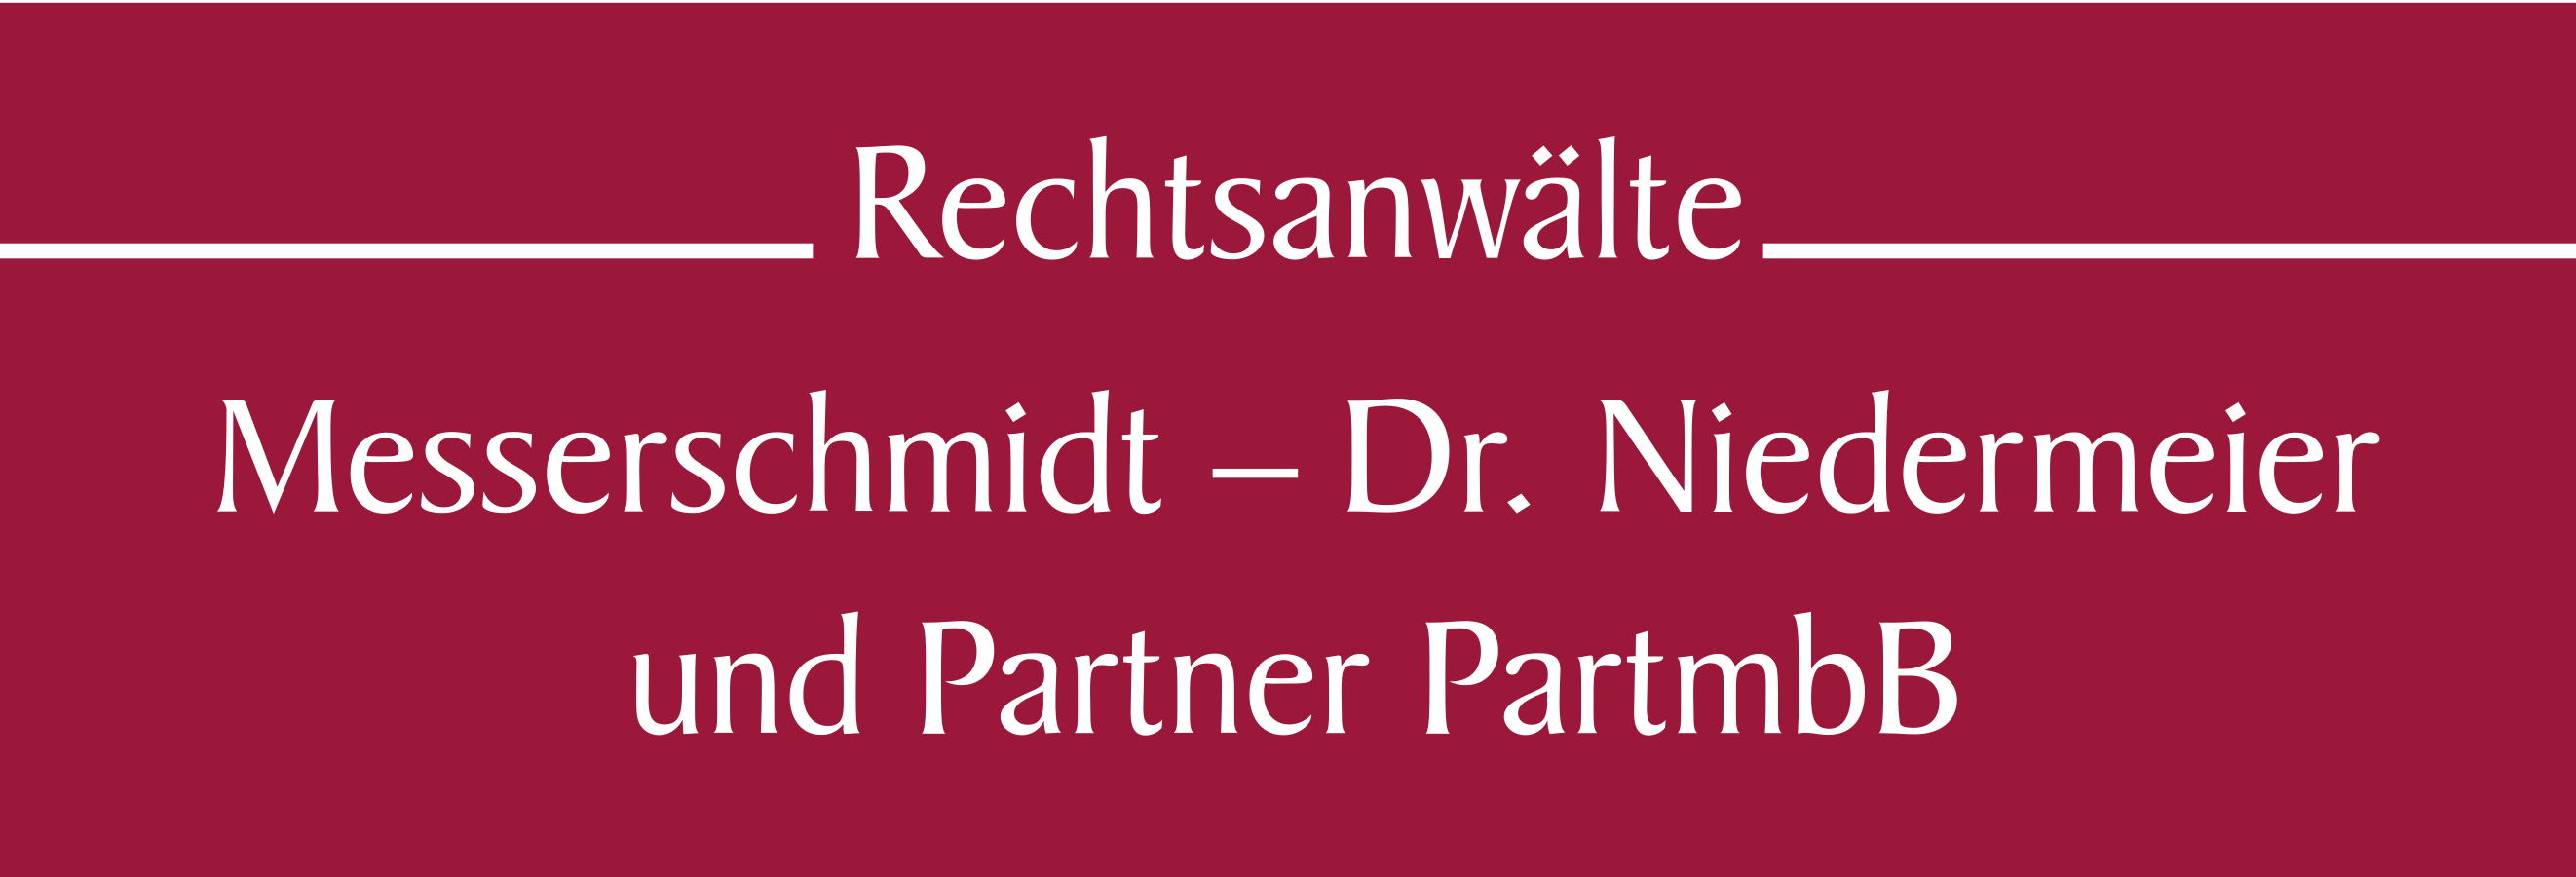 Rechtsanwälte Messerschmidt, Dr. Niedermeier und Partner PartmbB